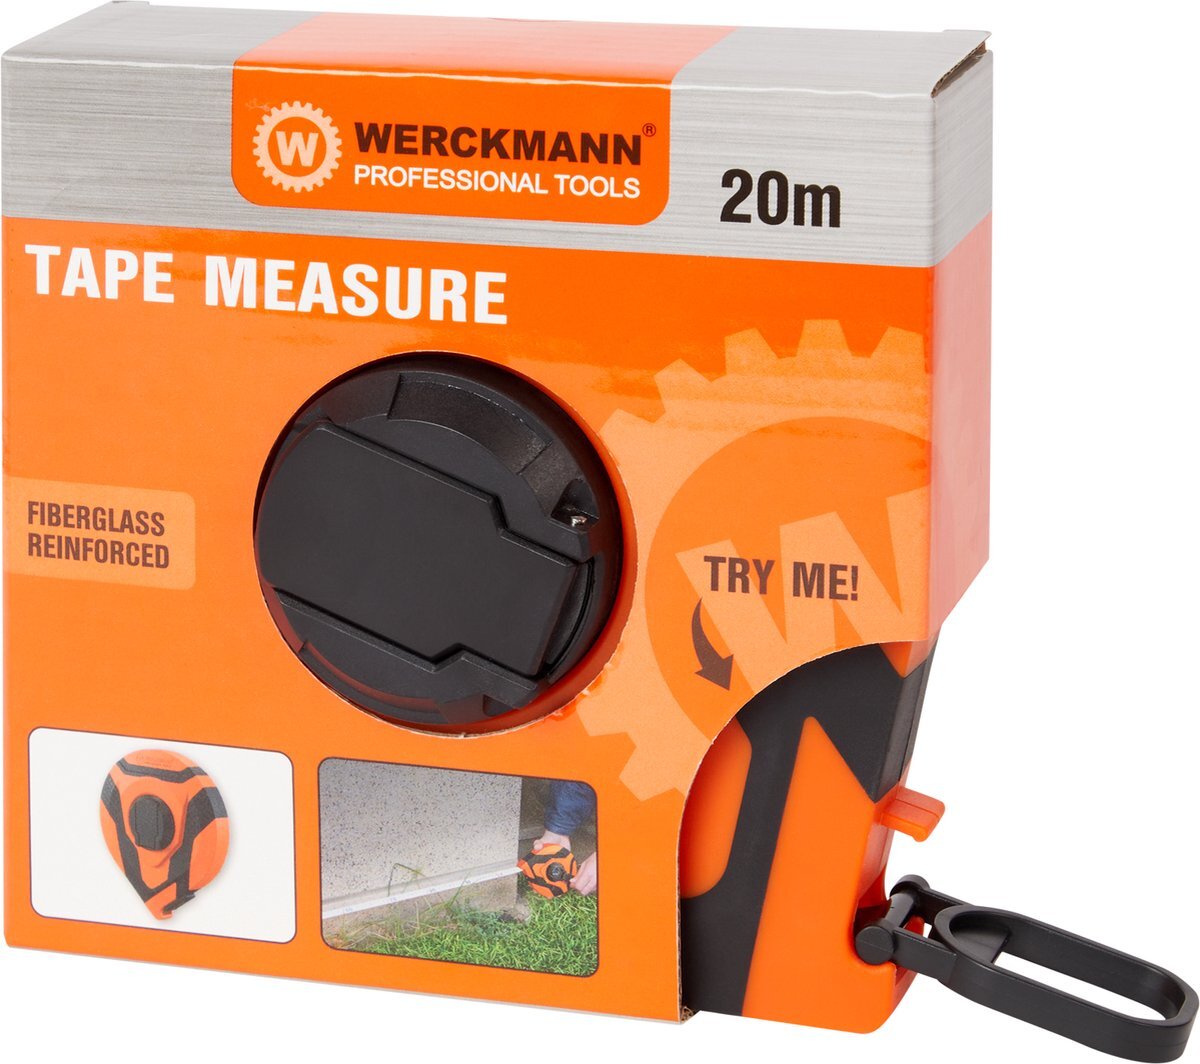 Simpel-store Werckmann 20m rolbandmaat-rolmaat-meetlint-afstandmeter